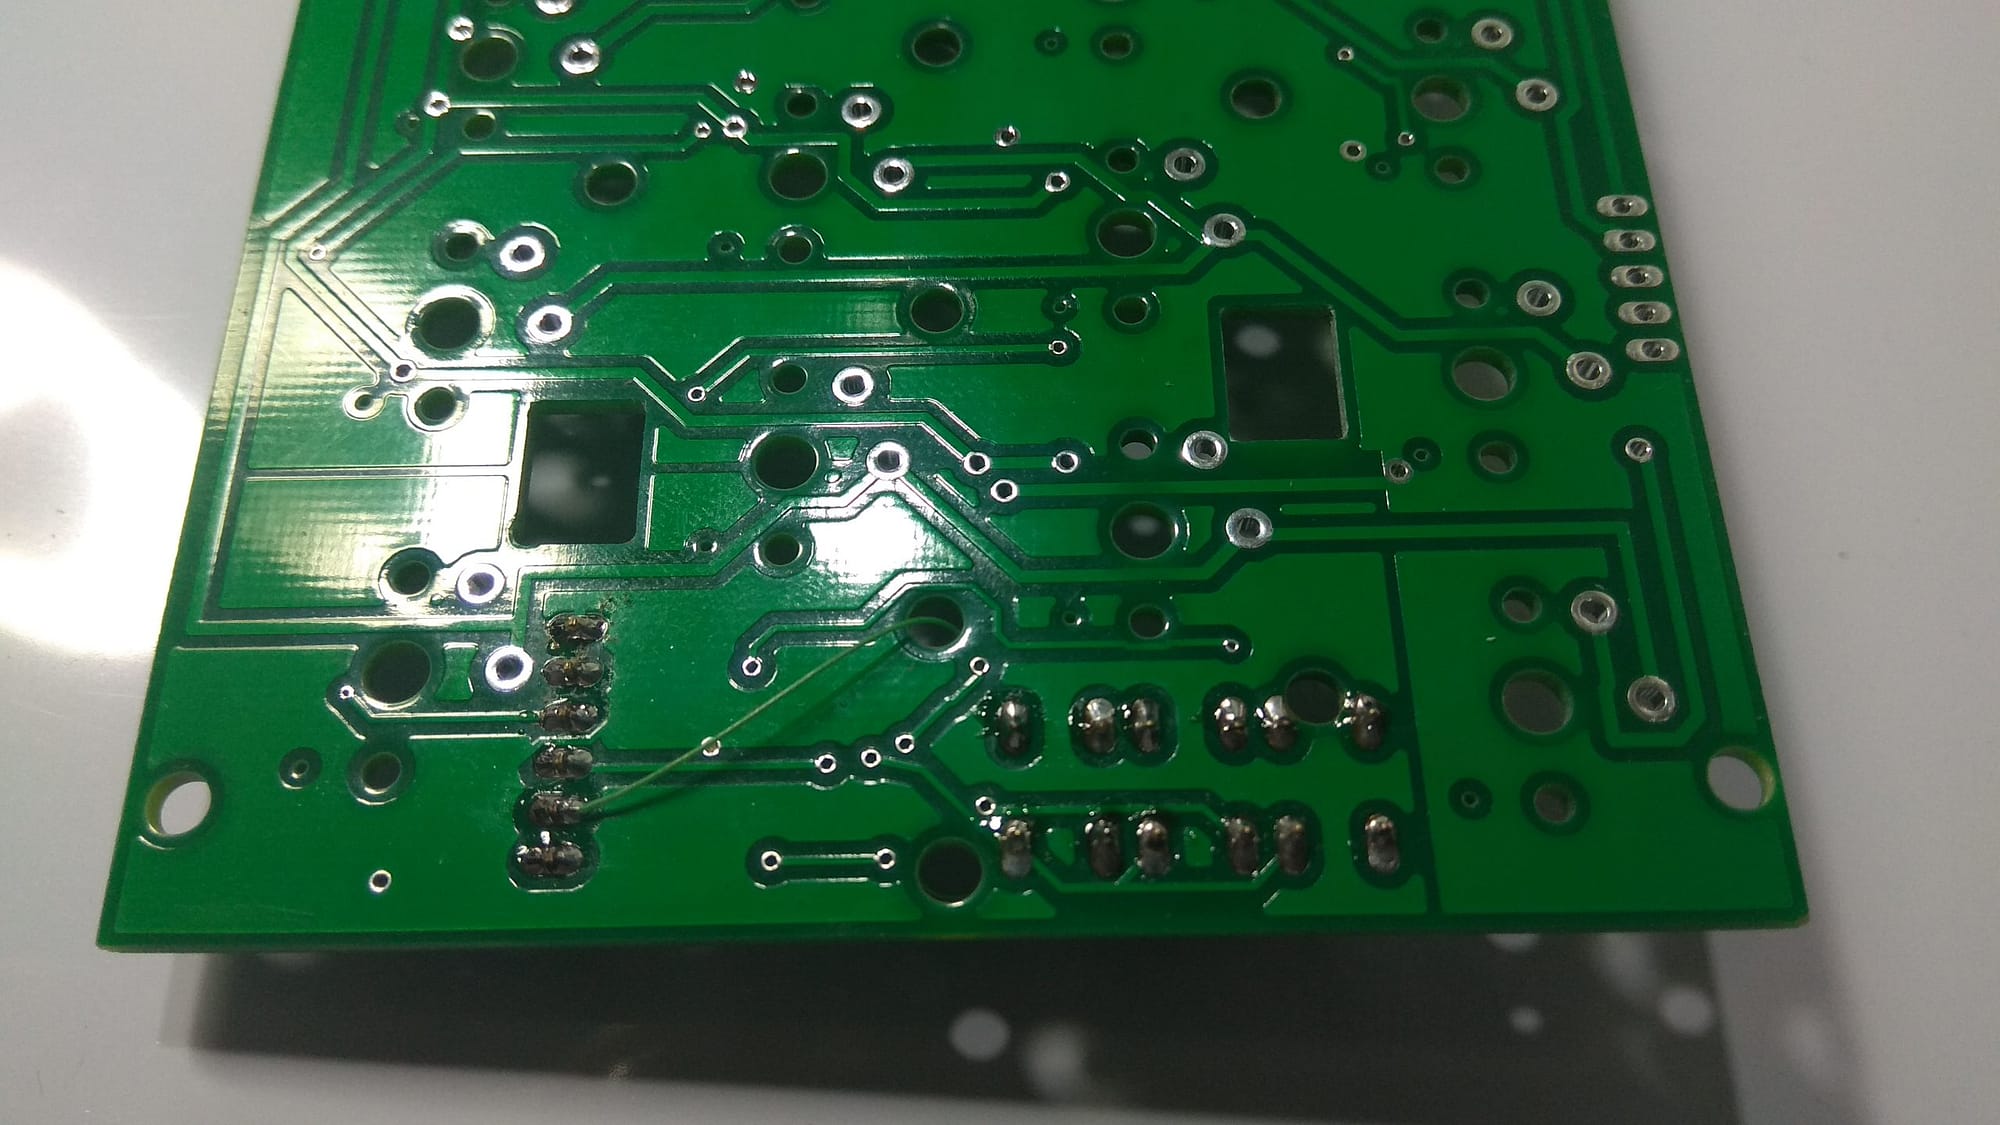 Detalles de la zona del conector de programación micro donde se el cable desde el pin nº2 (RXI) del micro. En los fotolitos y gerbers se ha corregido este error.